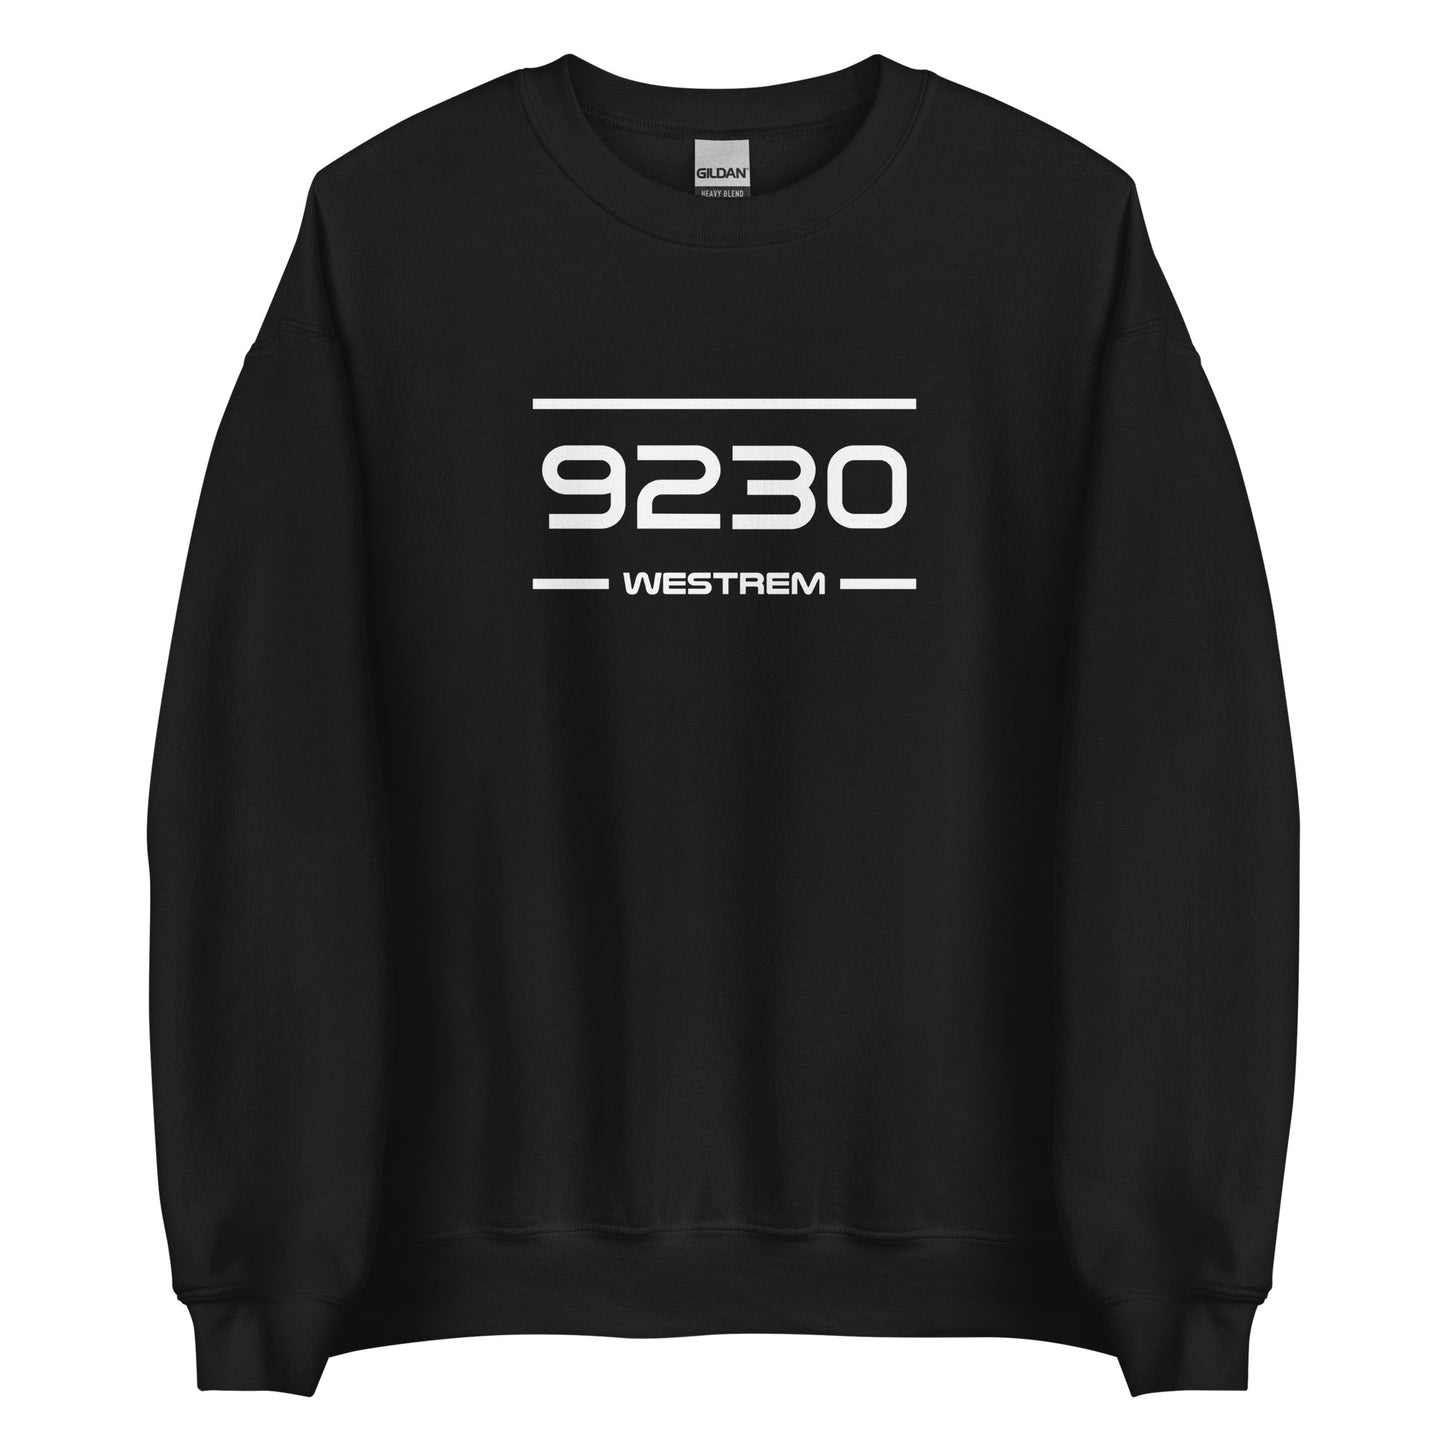 Sweater - 9230 - Westrem (M/V)